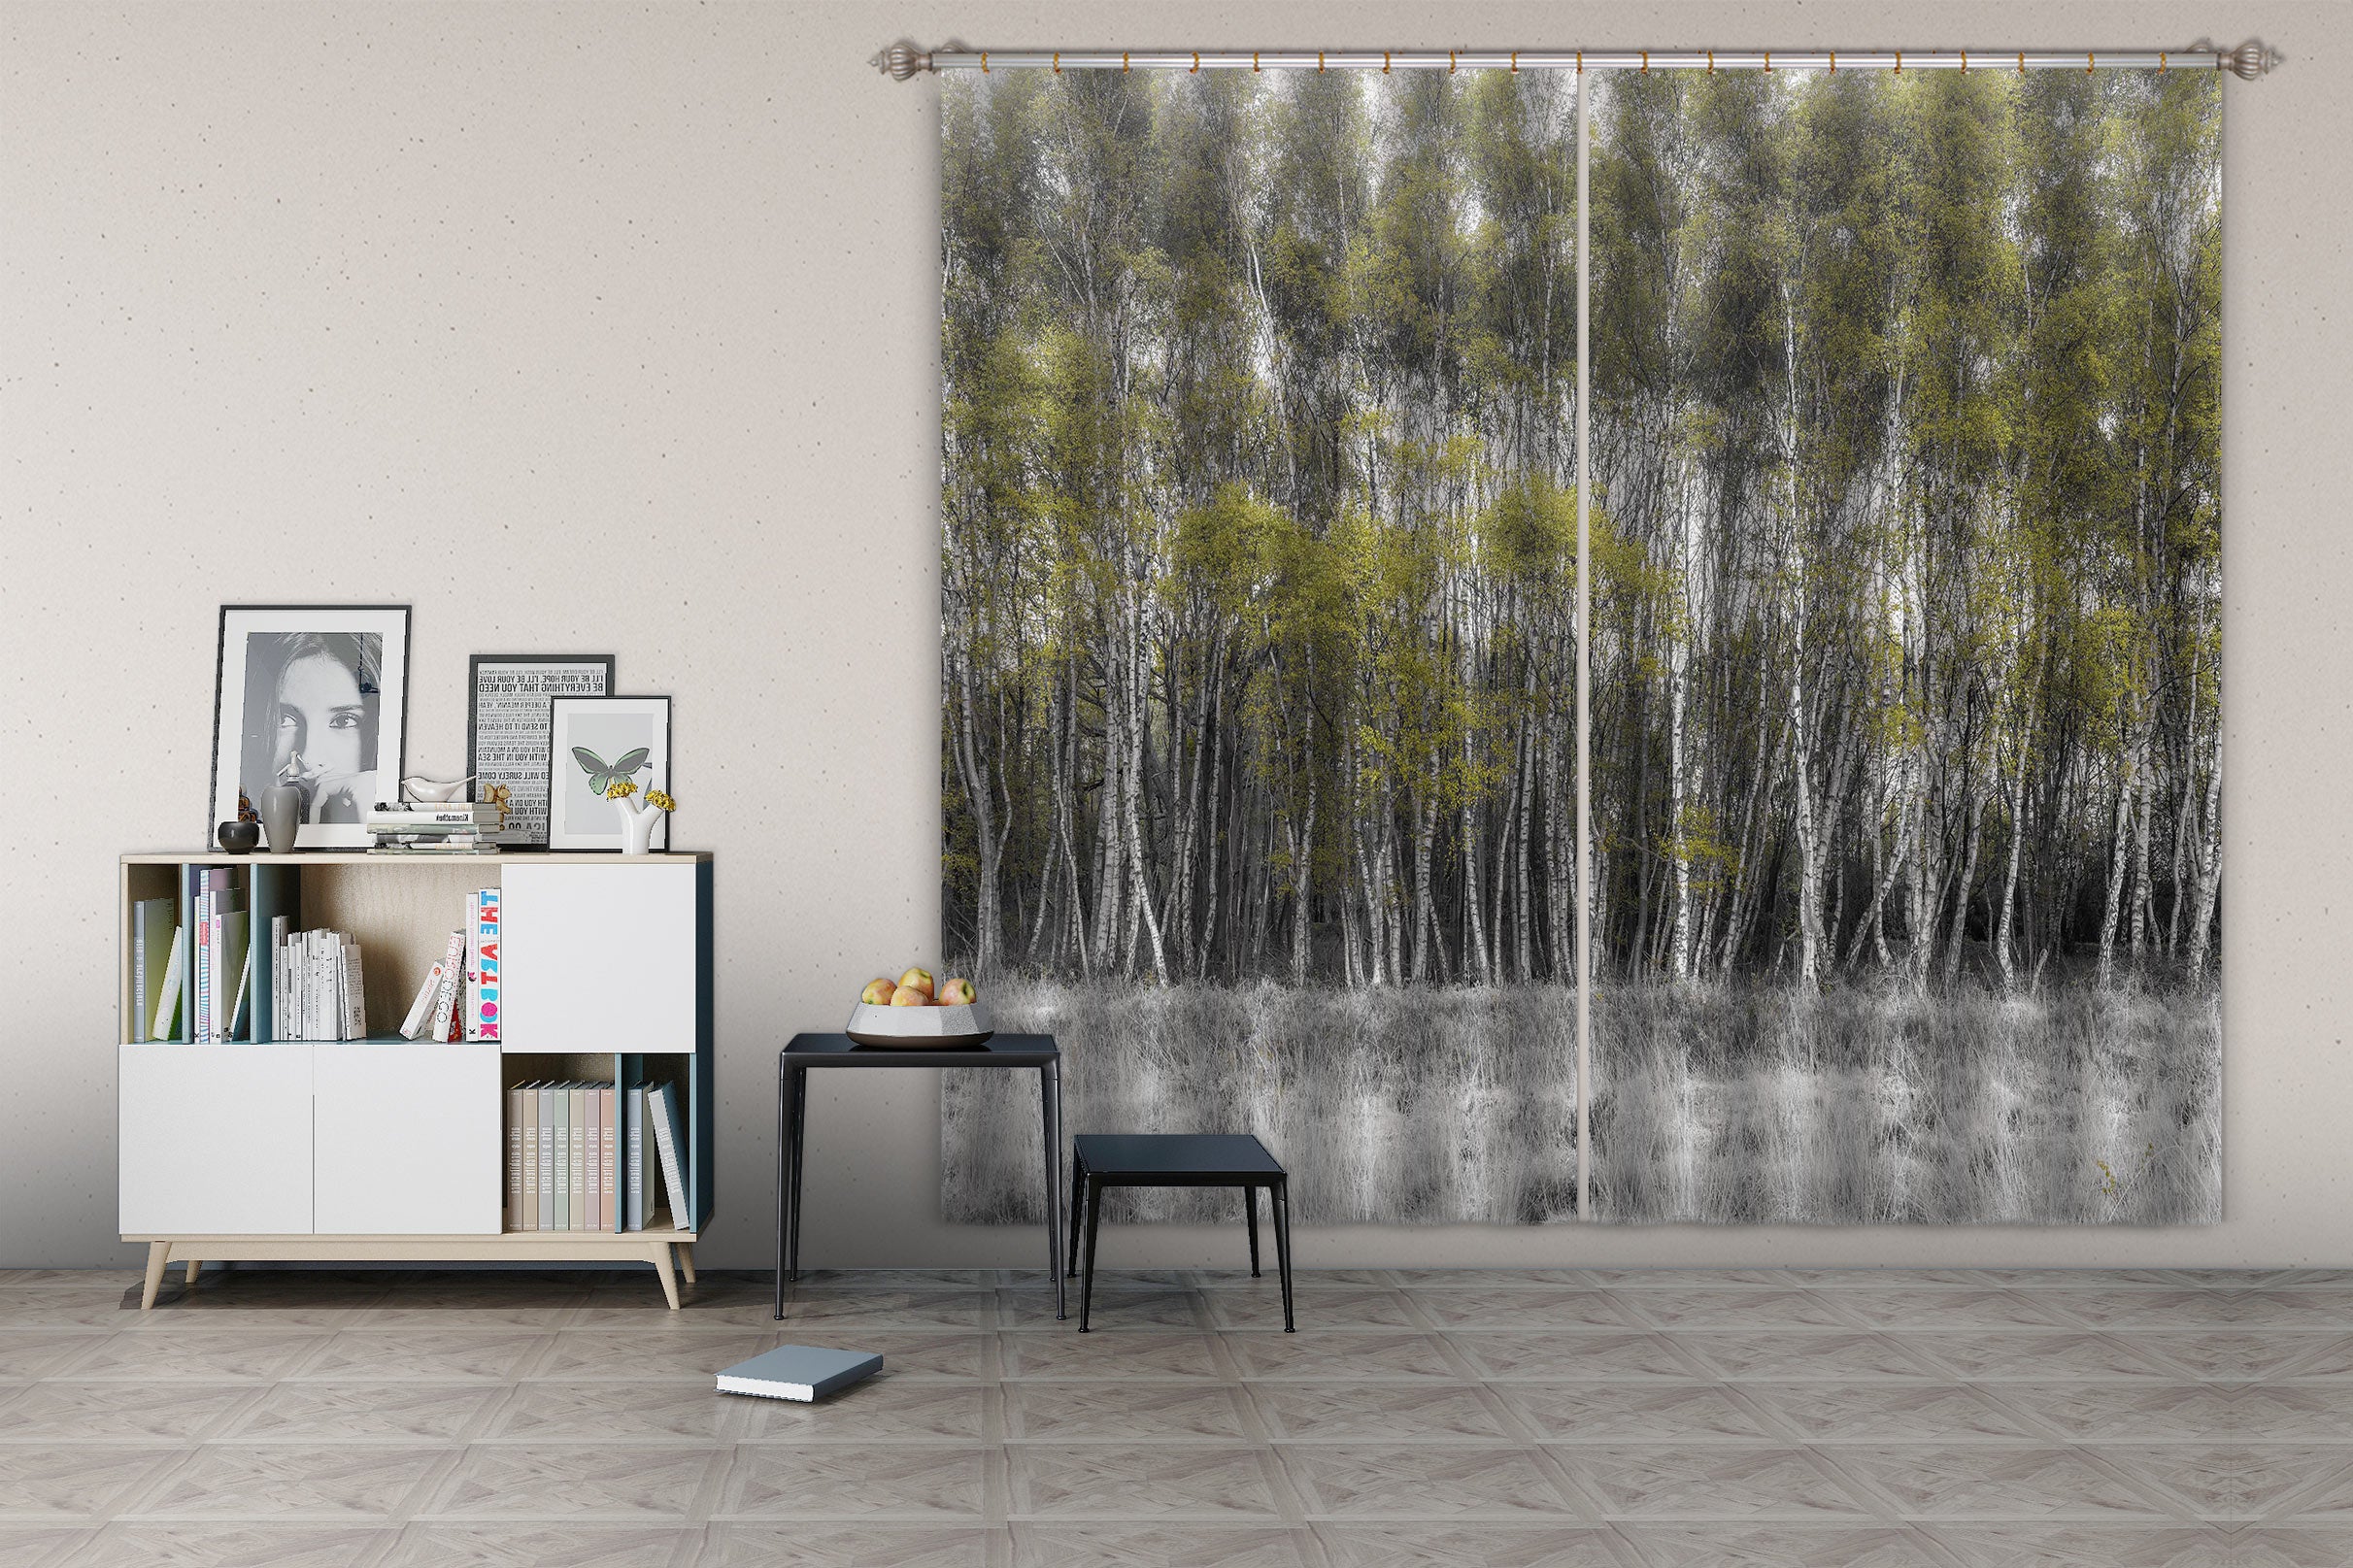 3D Forest Grass 055 Assaf Frank Curtain Curtains Drapes